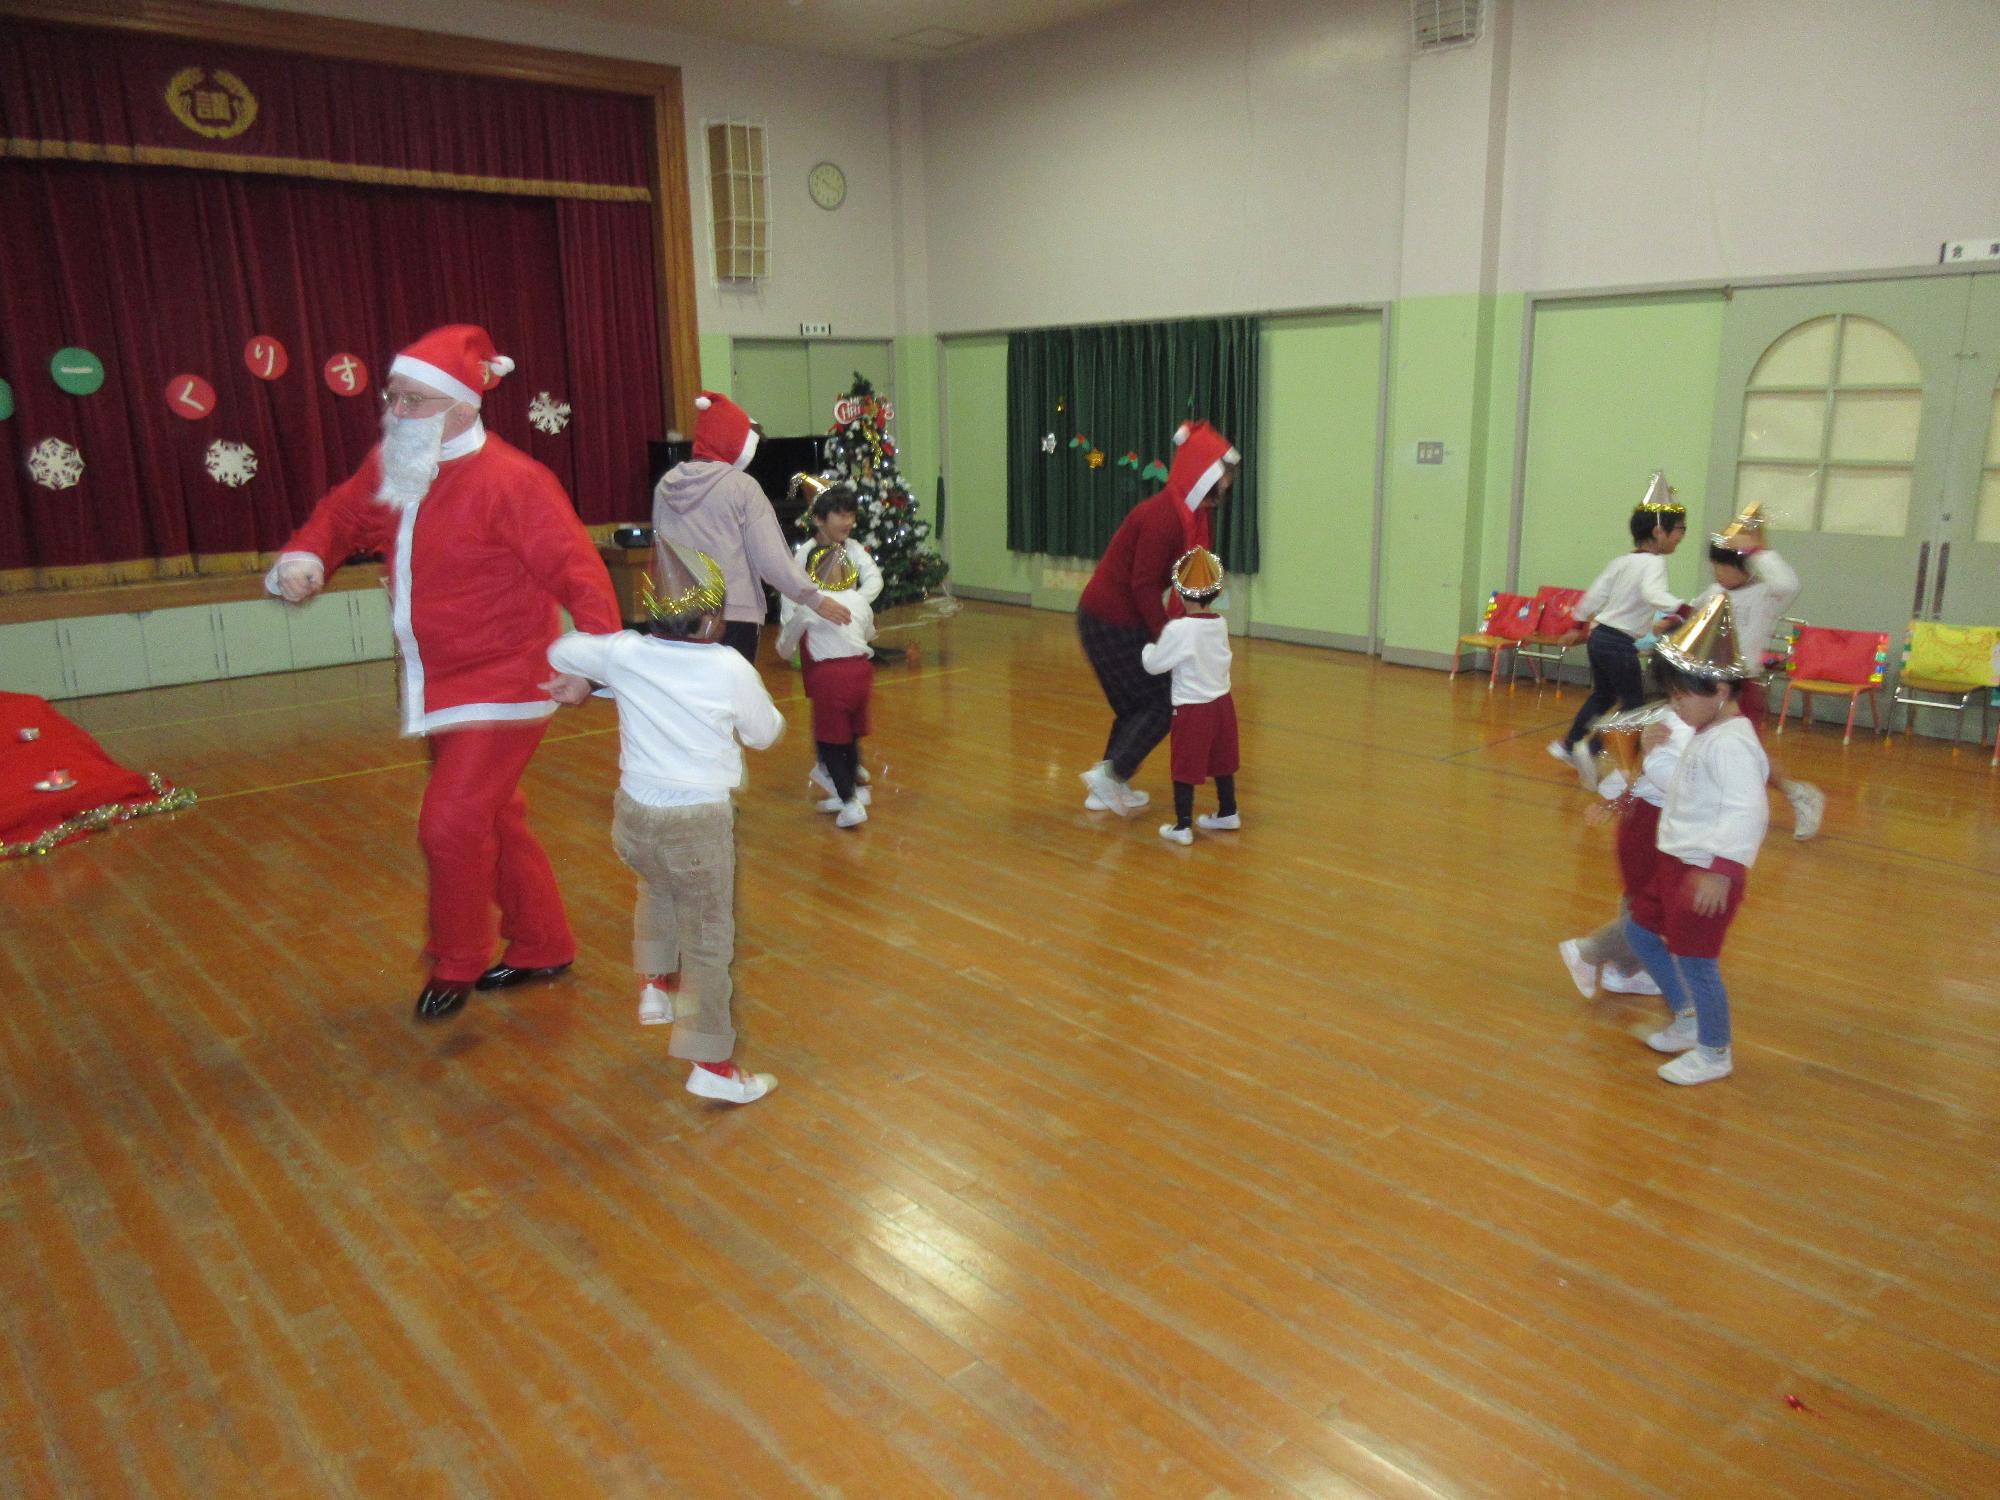 クリスマス会でサンタさんと子どもたちが楽しくダンスを踊っています。